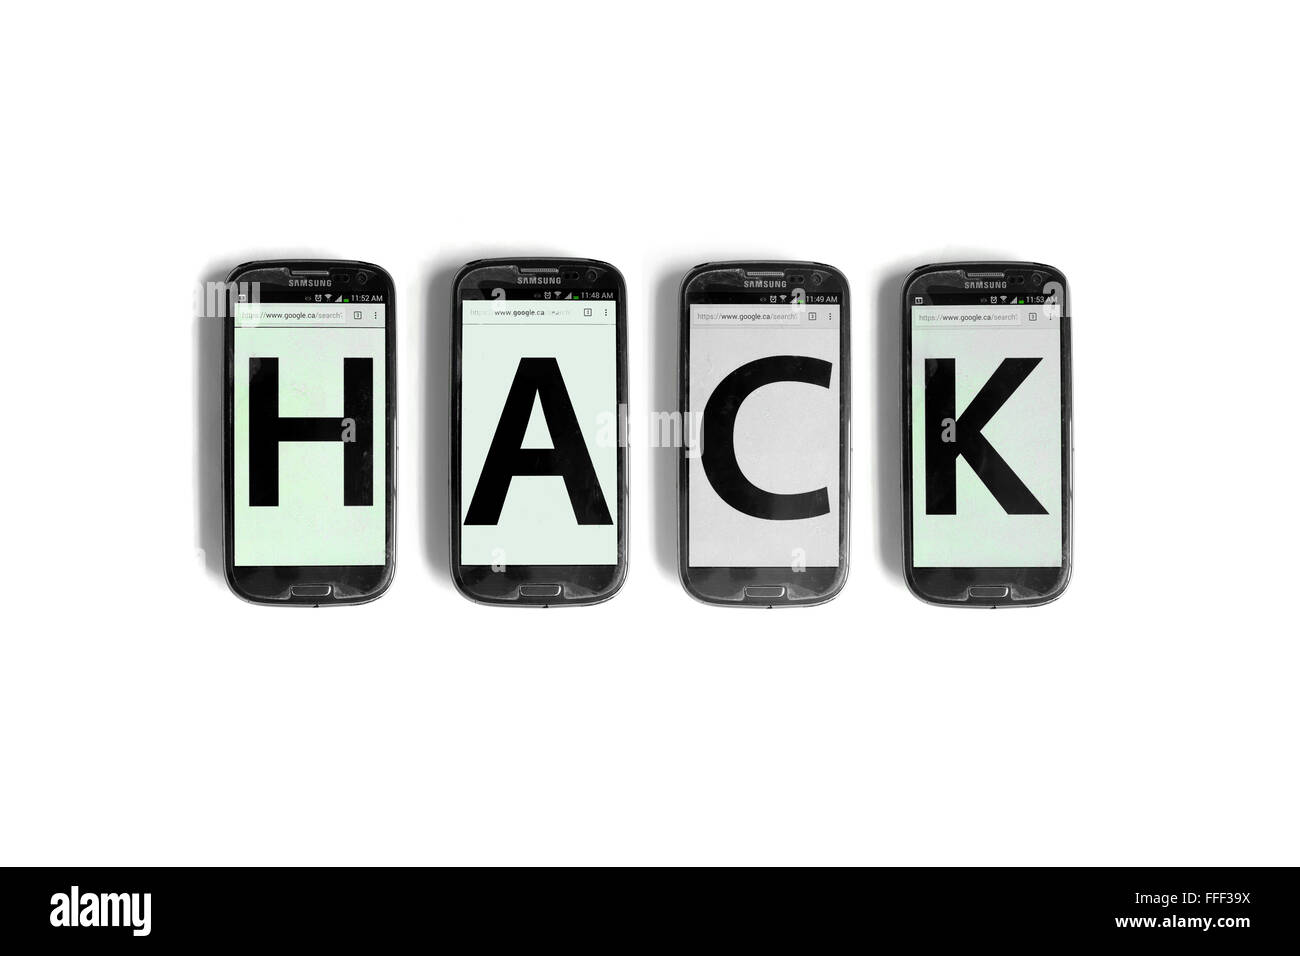 Hack écrit sur l'écran des smartphones photographié sur un fond blanc. Banque D'Images